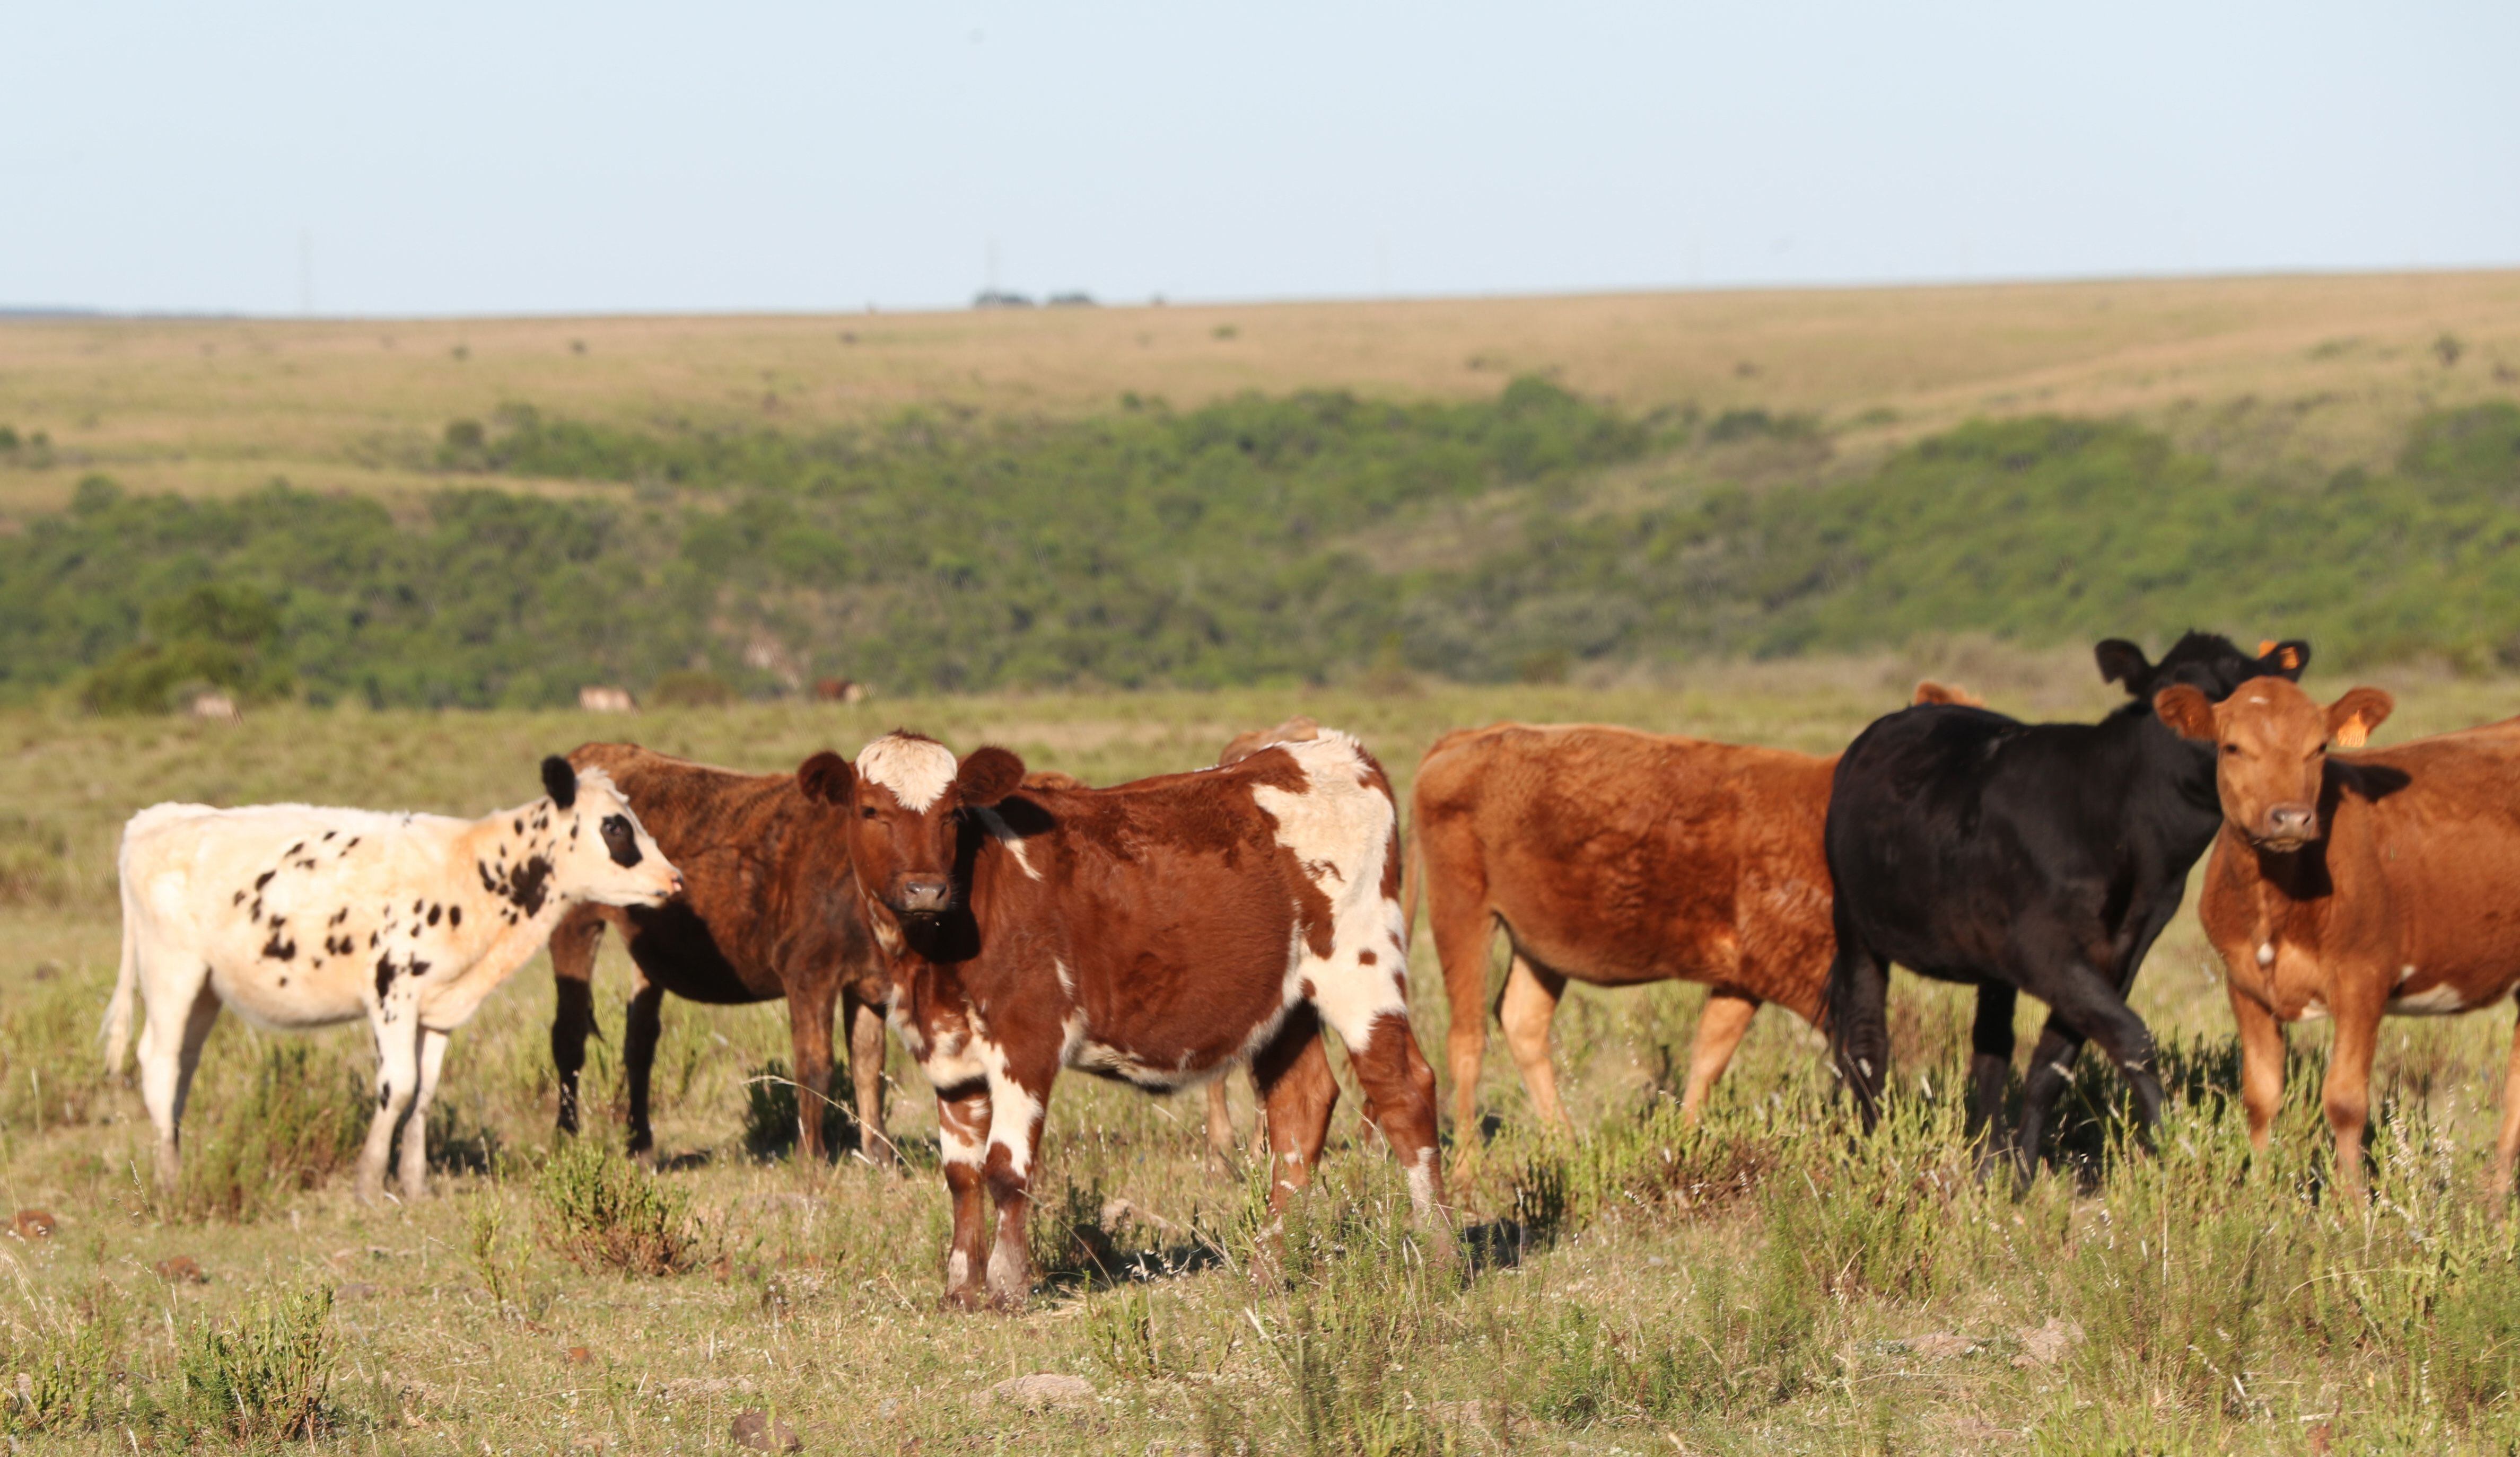 El reporte dos dos organizaciones ecologistas revela que sólo 2 de los 18 mayores países productores de carne y lácteos tienen objetivos o planes para reducir el metano de su sector ganadero (EFE)